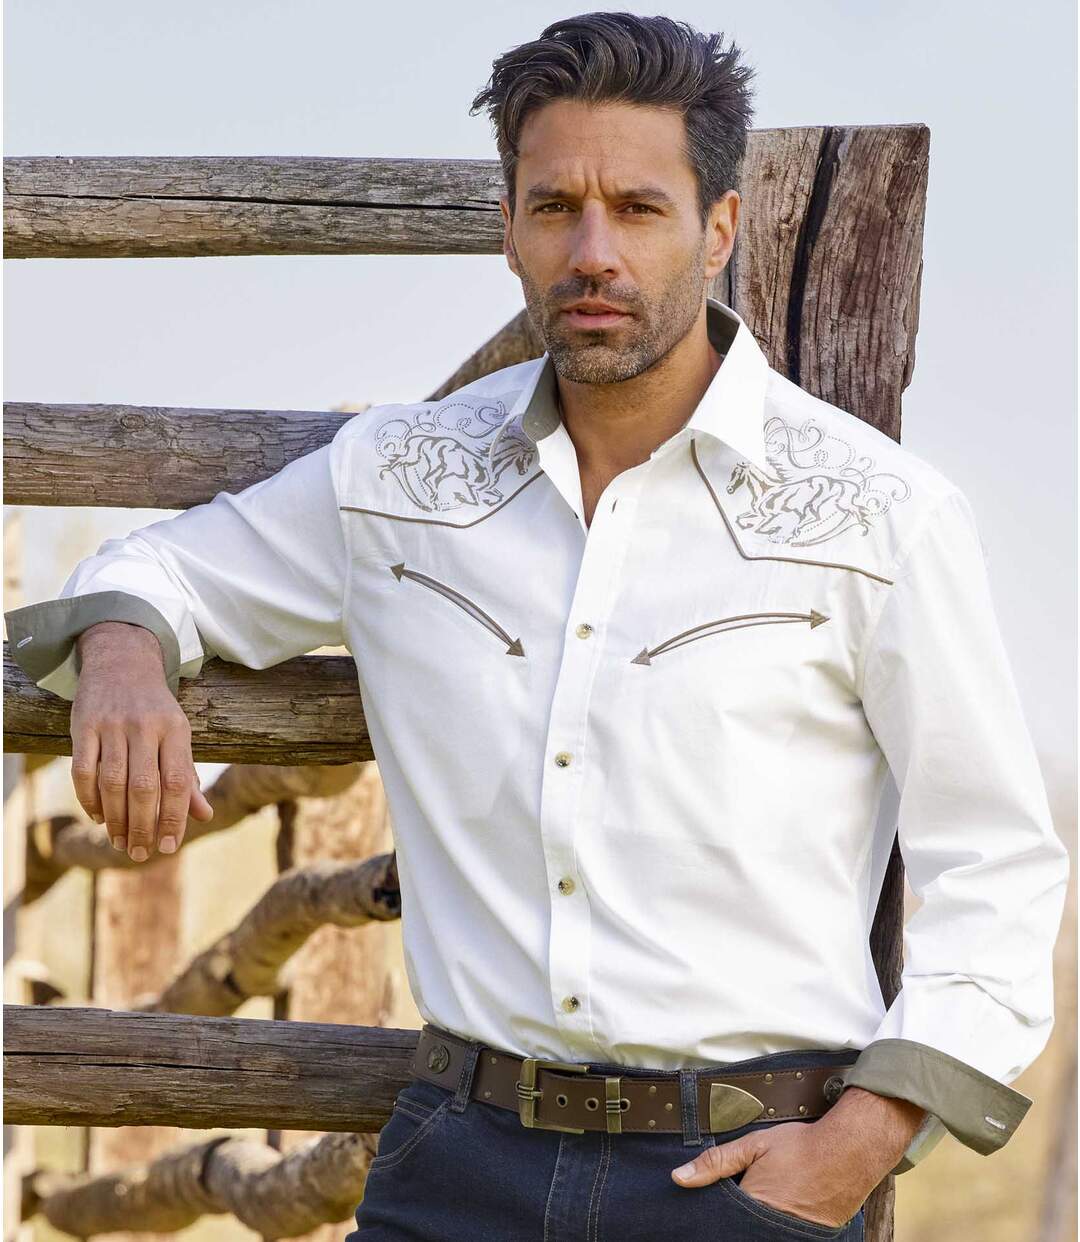 Men's White Country-Style Shirt Atlas For Men